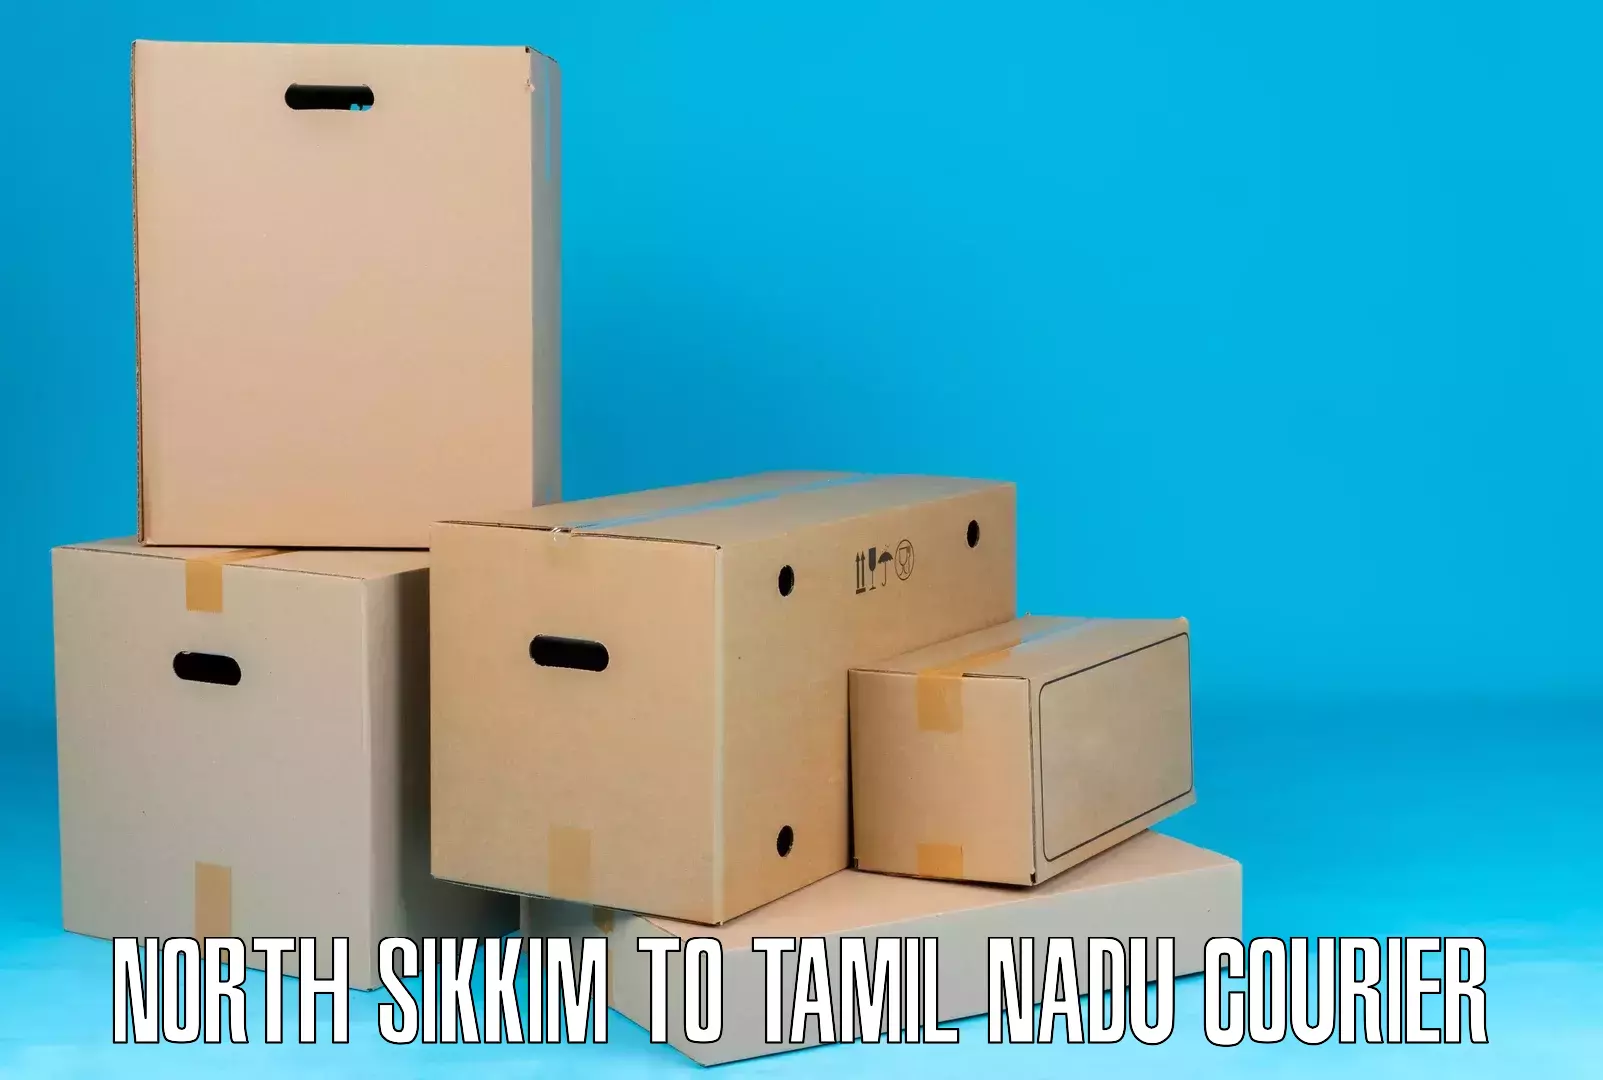 Efficient cargo handling North Sikkim to Tamil Nadu